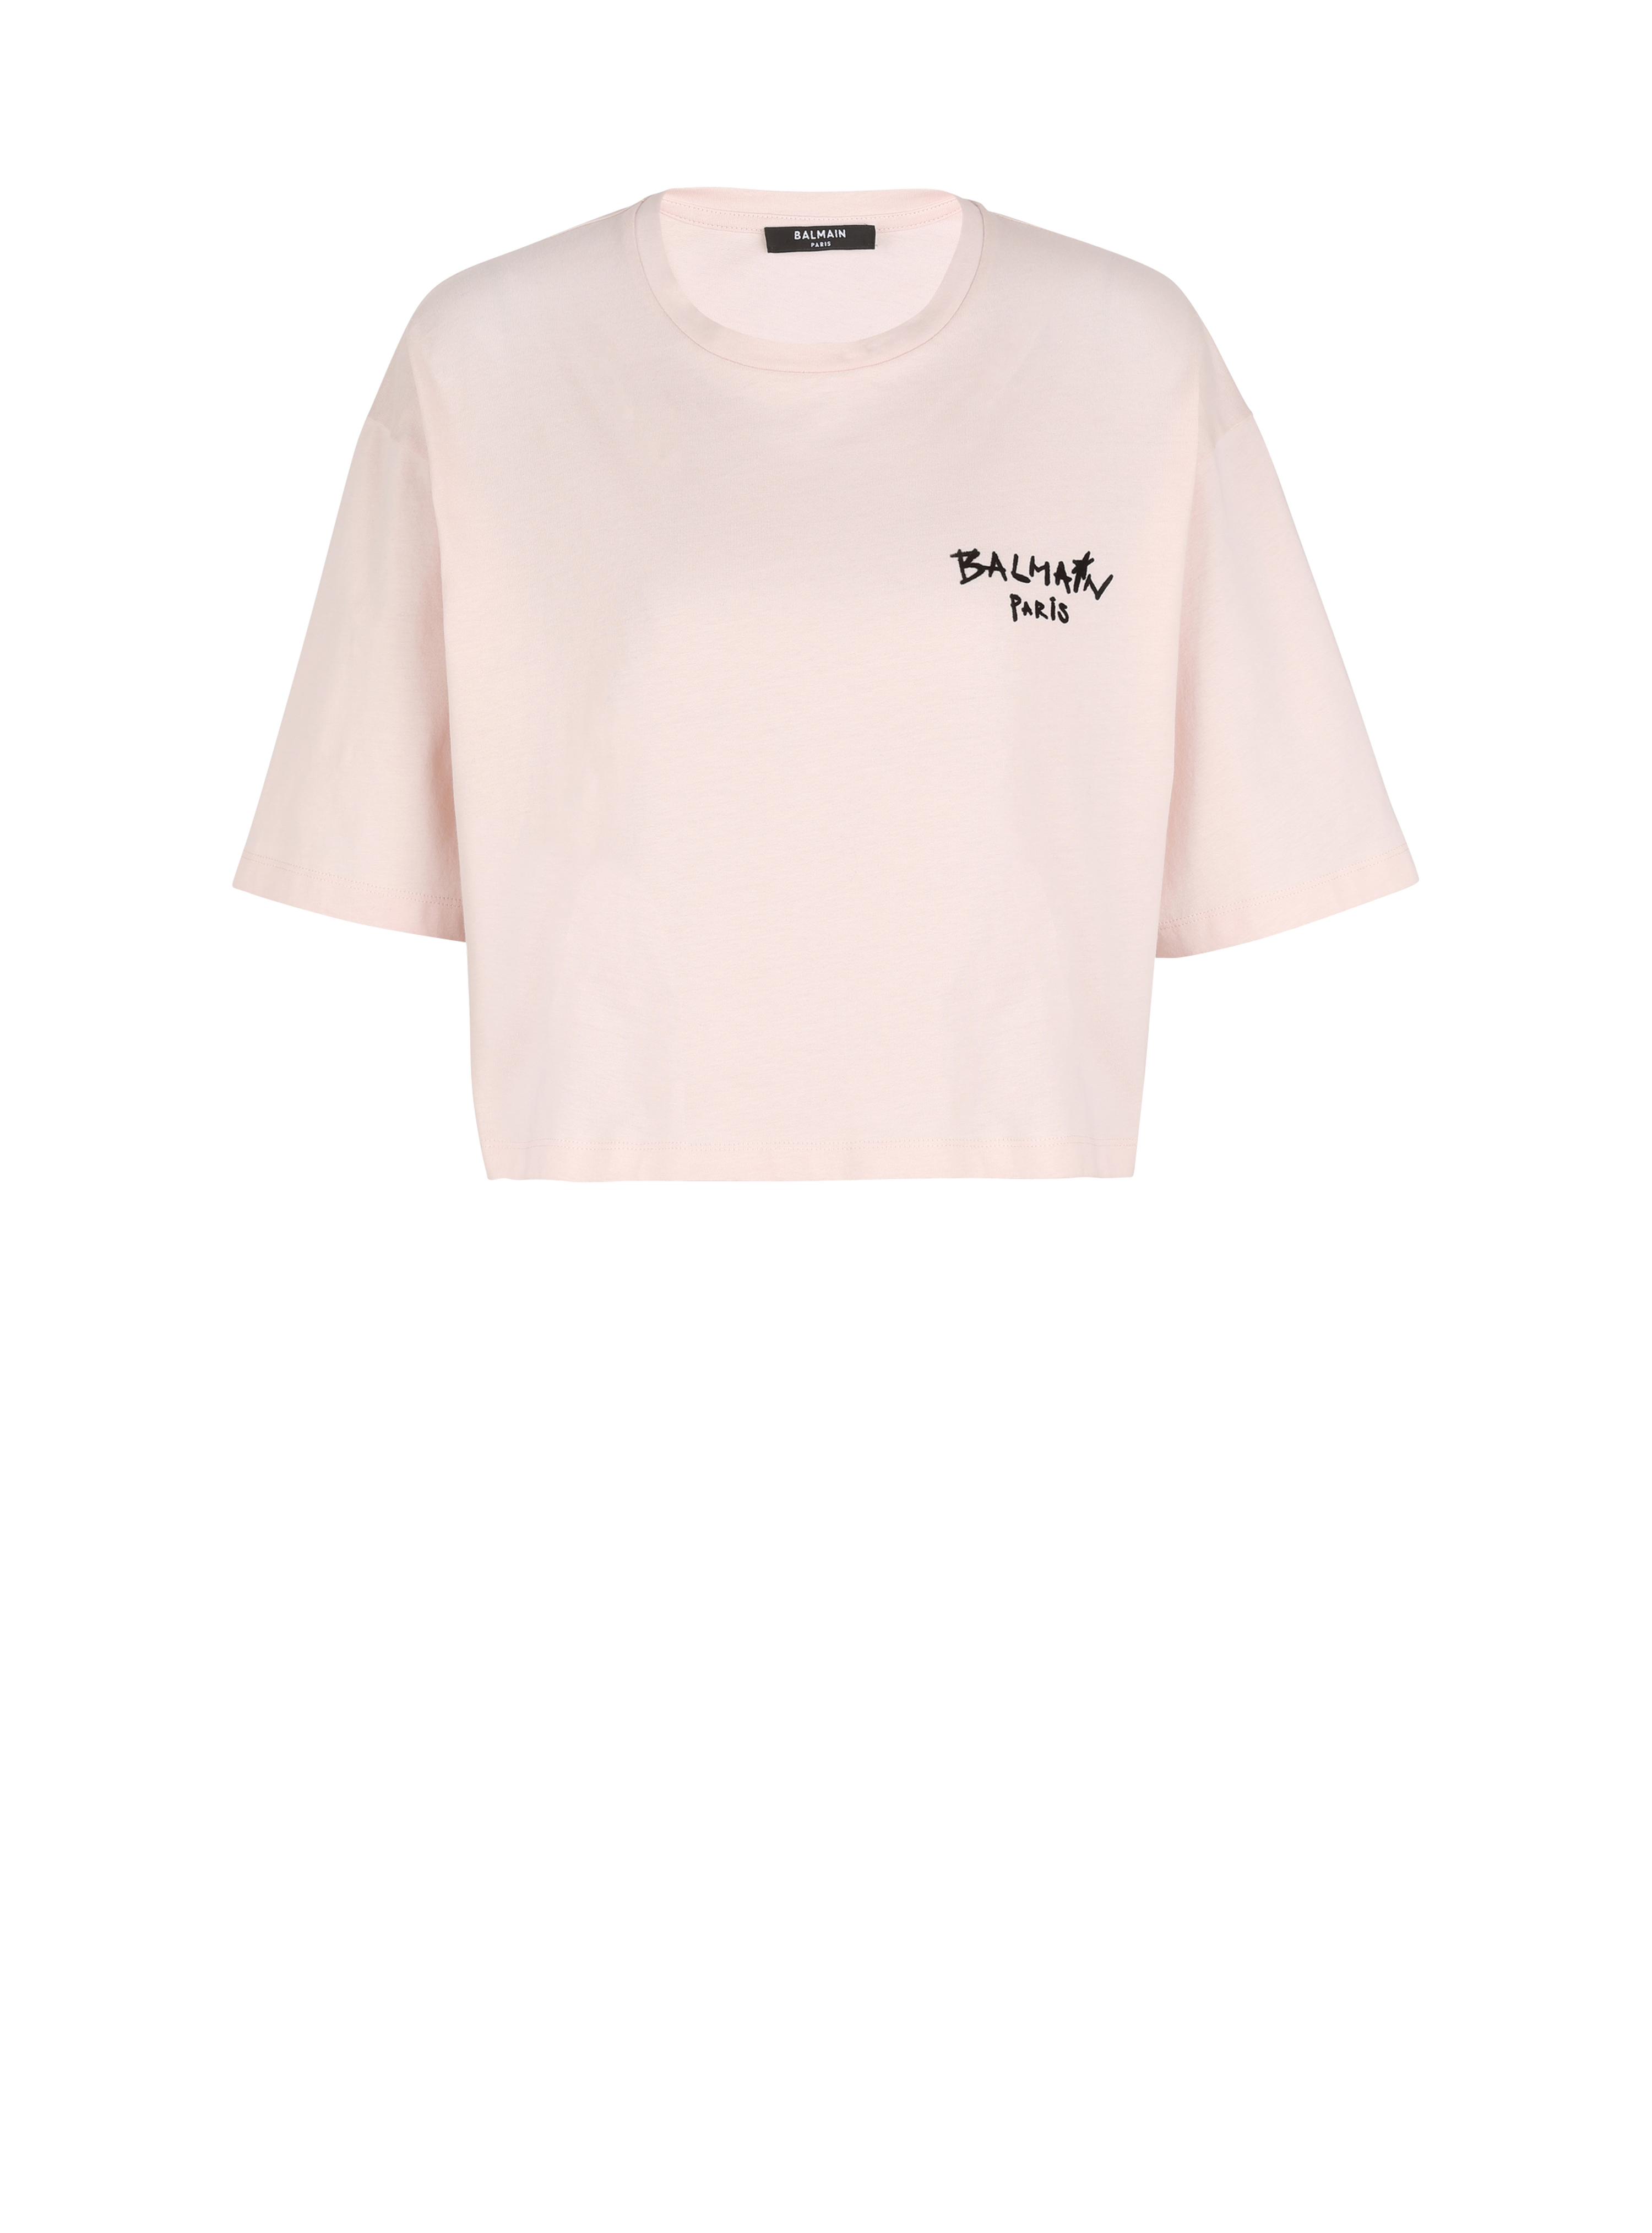 Camiseta corta de algodón con logotipo pequeño grafiti de Balmain flocado, rose